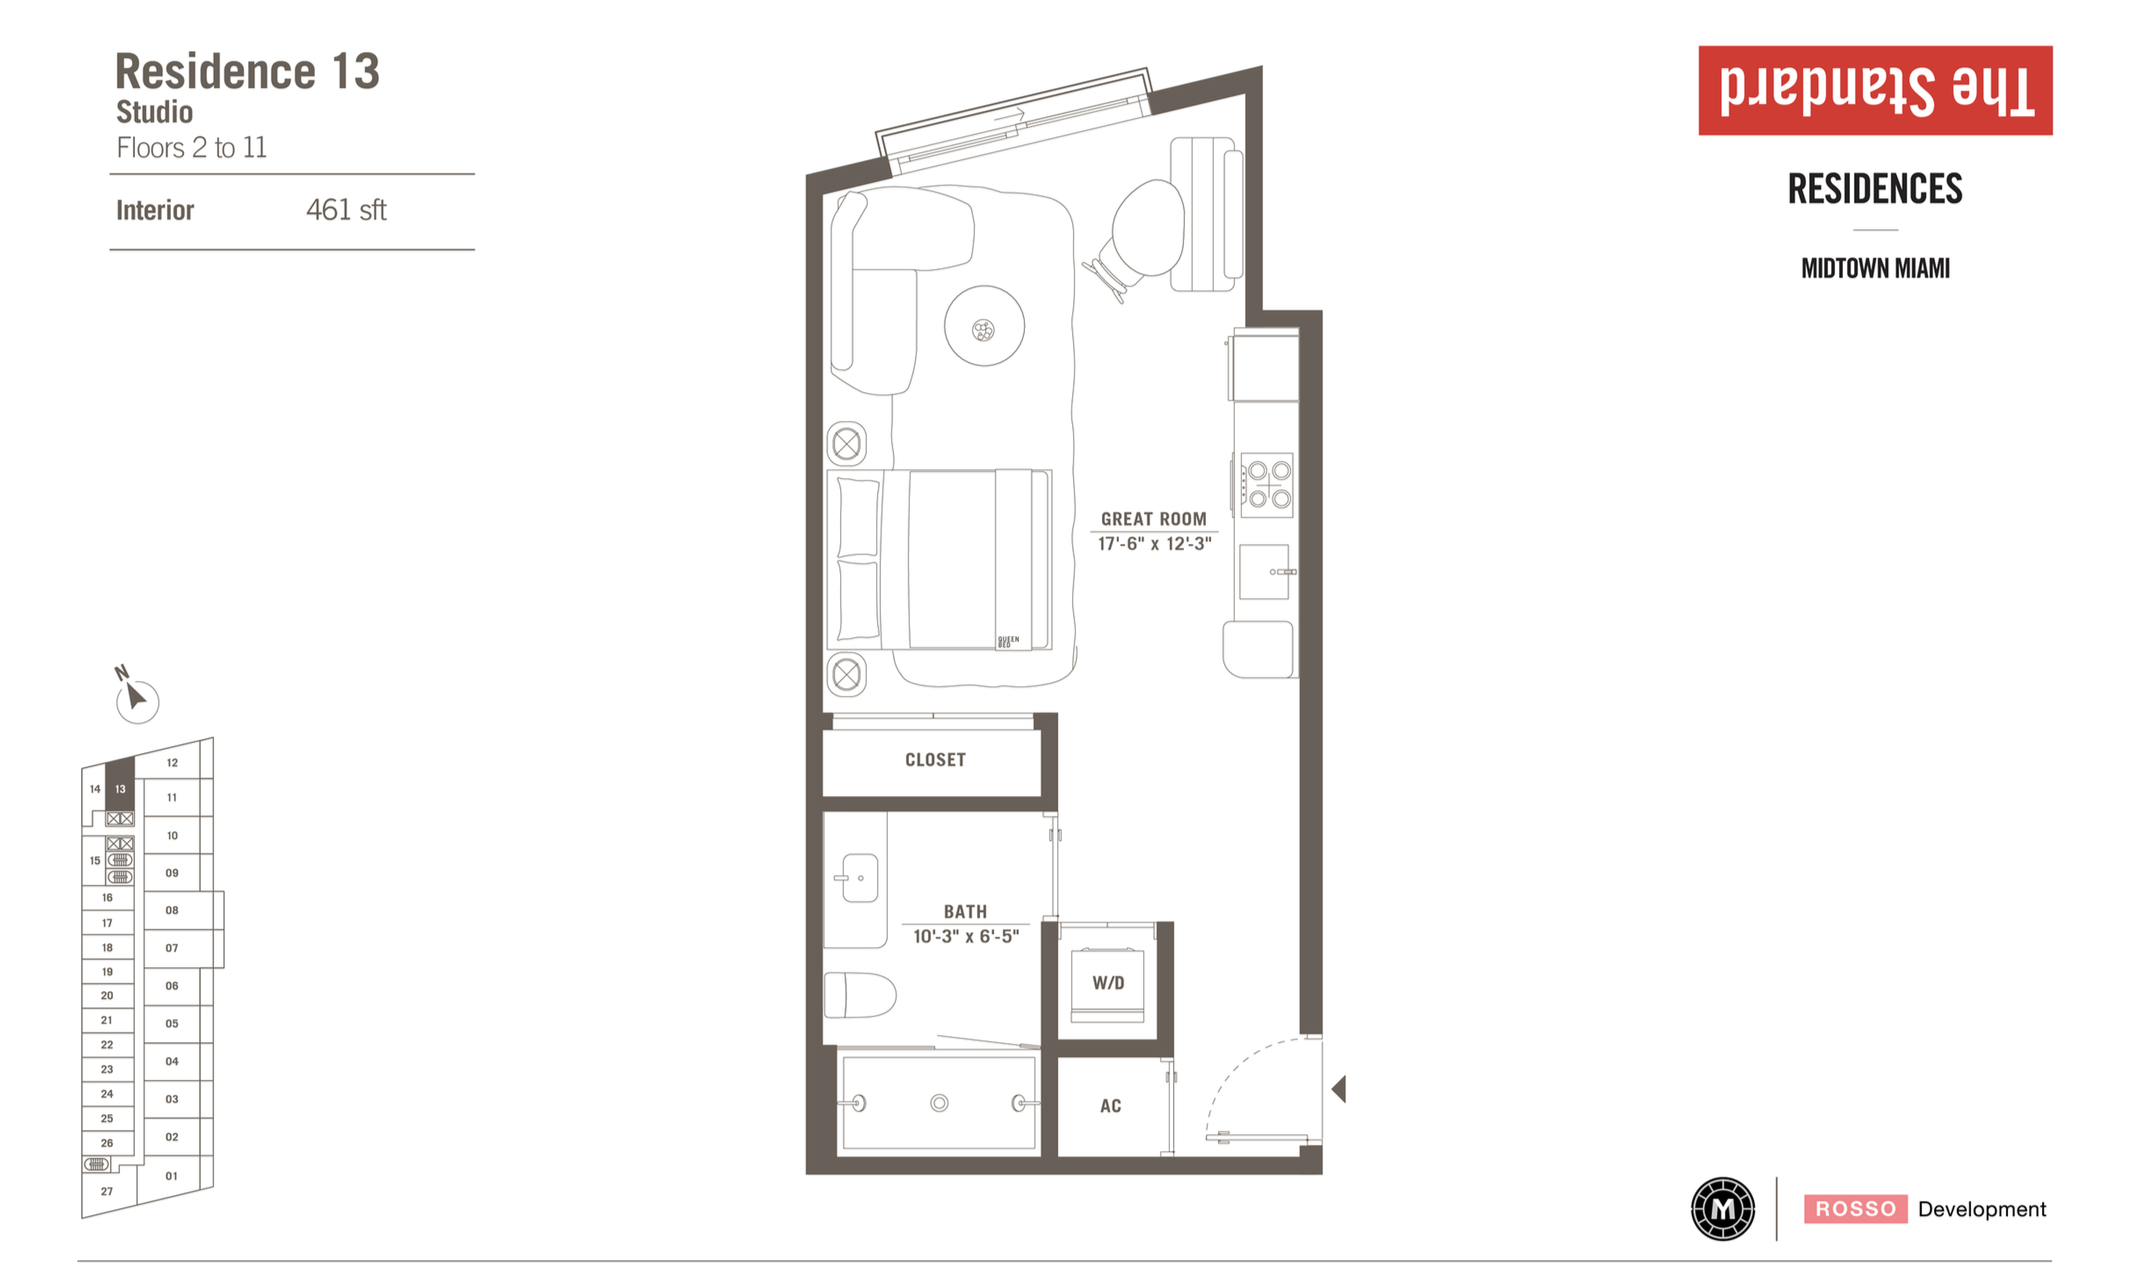 The Standard Residences | Residence 13 | Studio | 461 SF | Floor 2-11